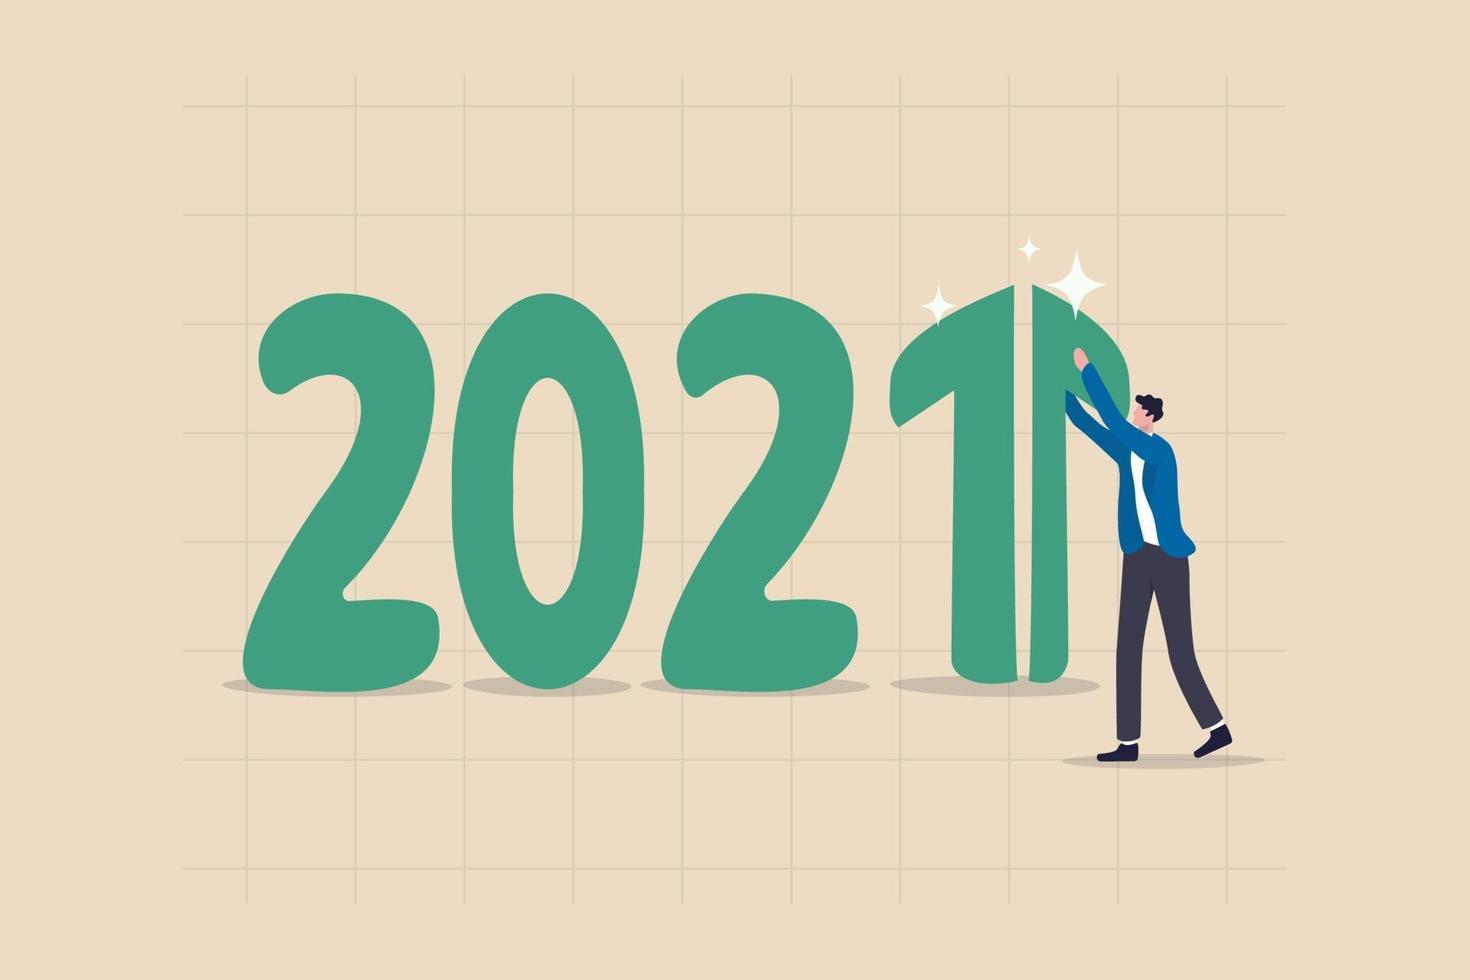 år 2021 ekonomisk återhämtning med ett grönt stigande pildiagram på nummer 1 vektor